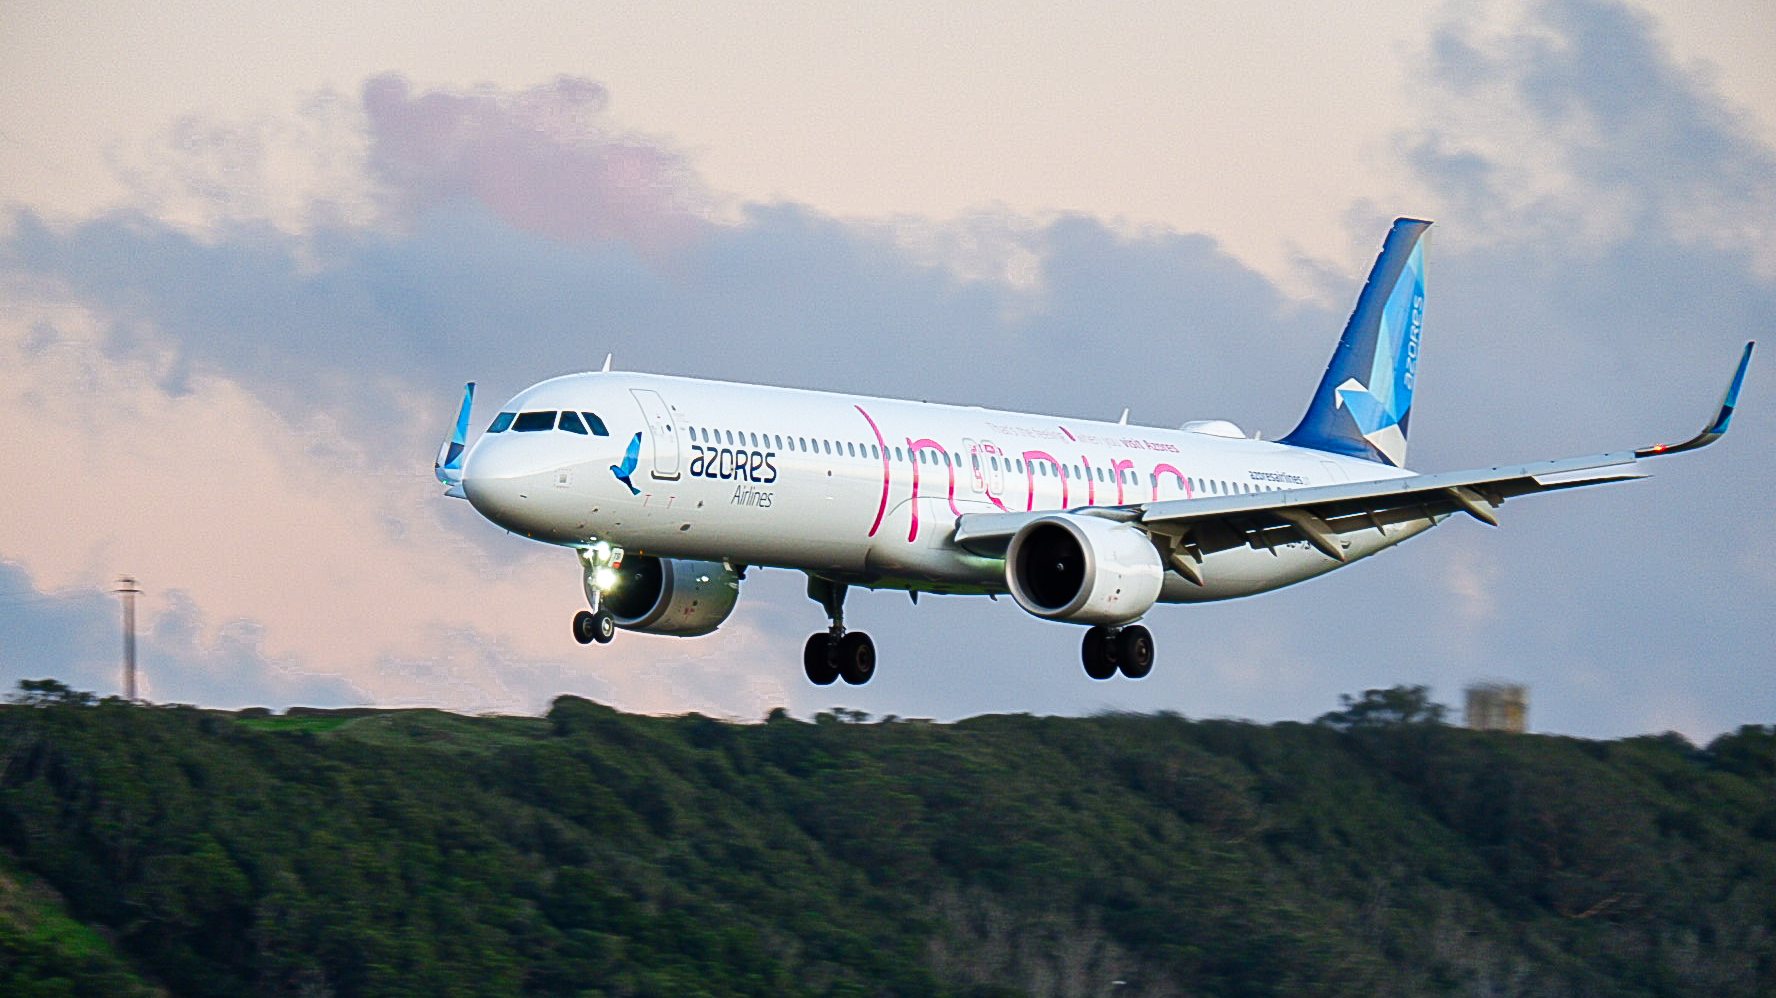 Constituem rotas aéreas de serviço público a operação para o Pico, Faial, Santa Maria e Funchal, que são asseguradas pela Azores Airlines para o continente